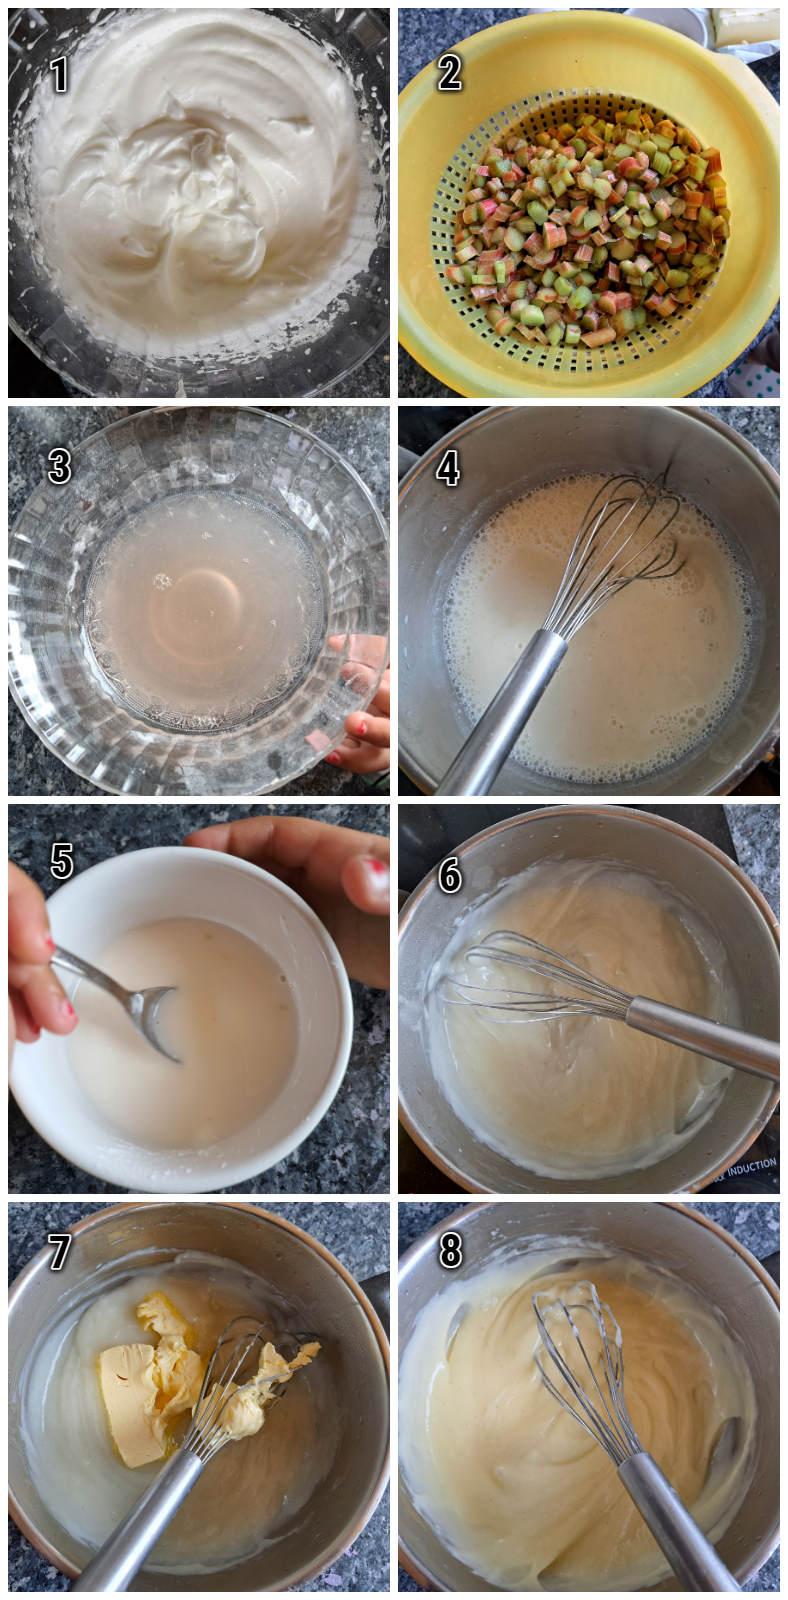 Die Herstellung vom Pudding mit Rhabarbersaft.